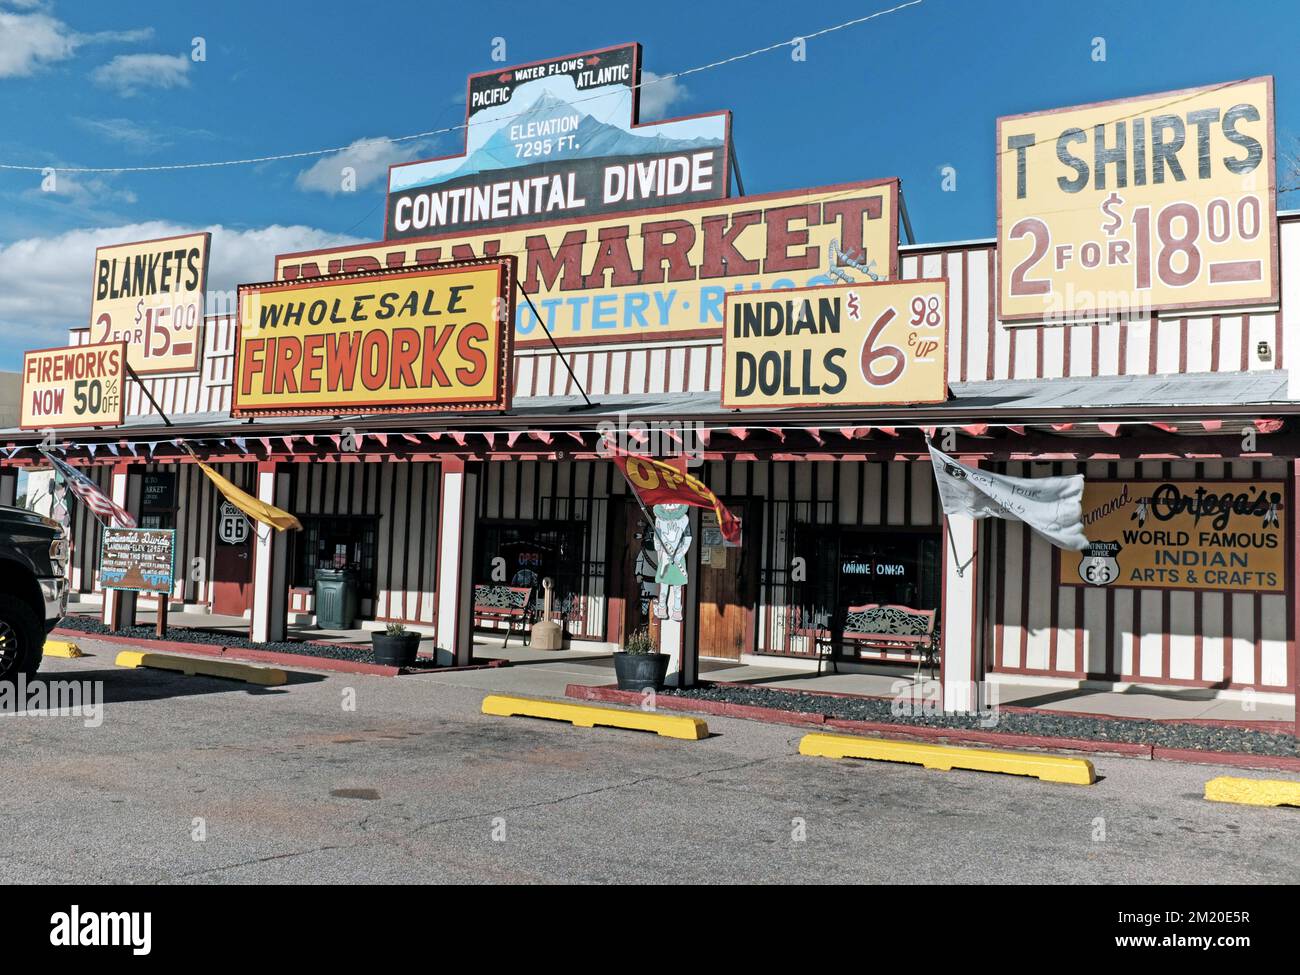 The Continental Divide Ortega's Indian Market sur la route 66 à Continental Divide, Nouveau-Mexique, le 13 novembre 2022. Banque D'Images